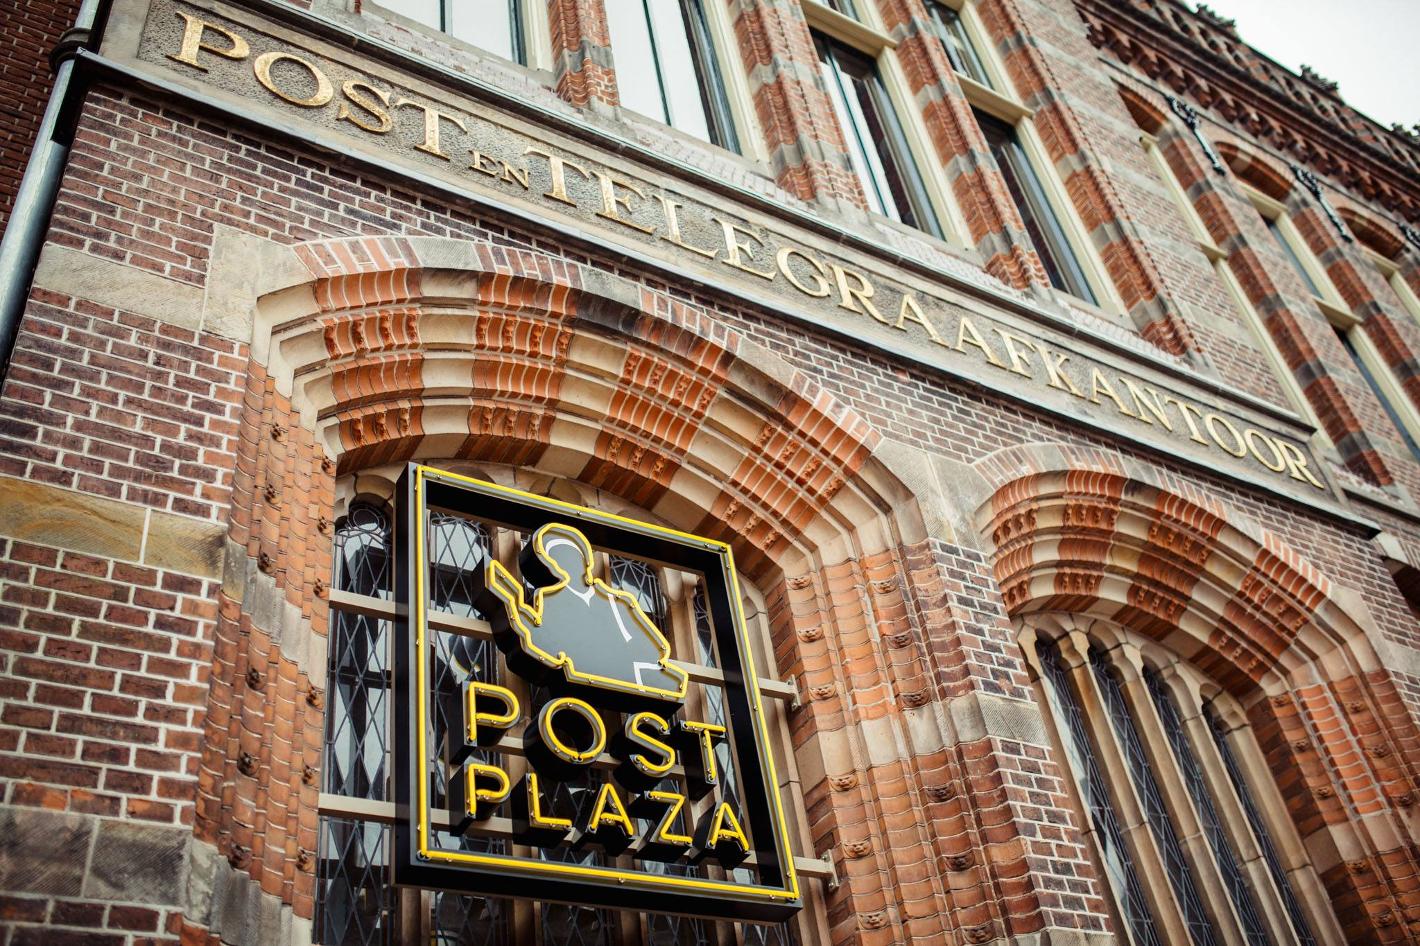 Foto Post-Plaza Hotel & Grand Café in Leeuwarden, Slapen, Hotels & logies - #2